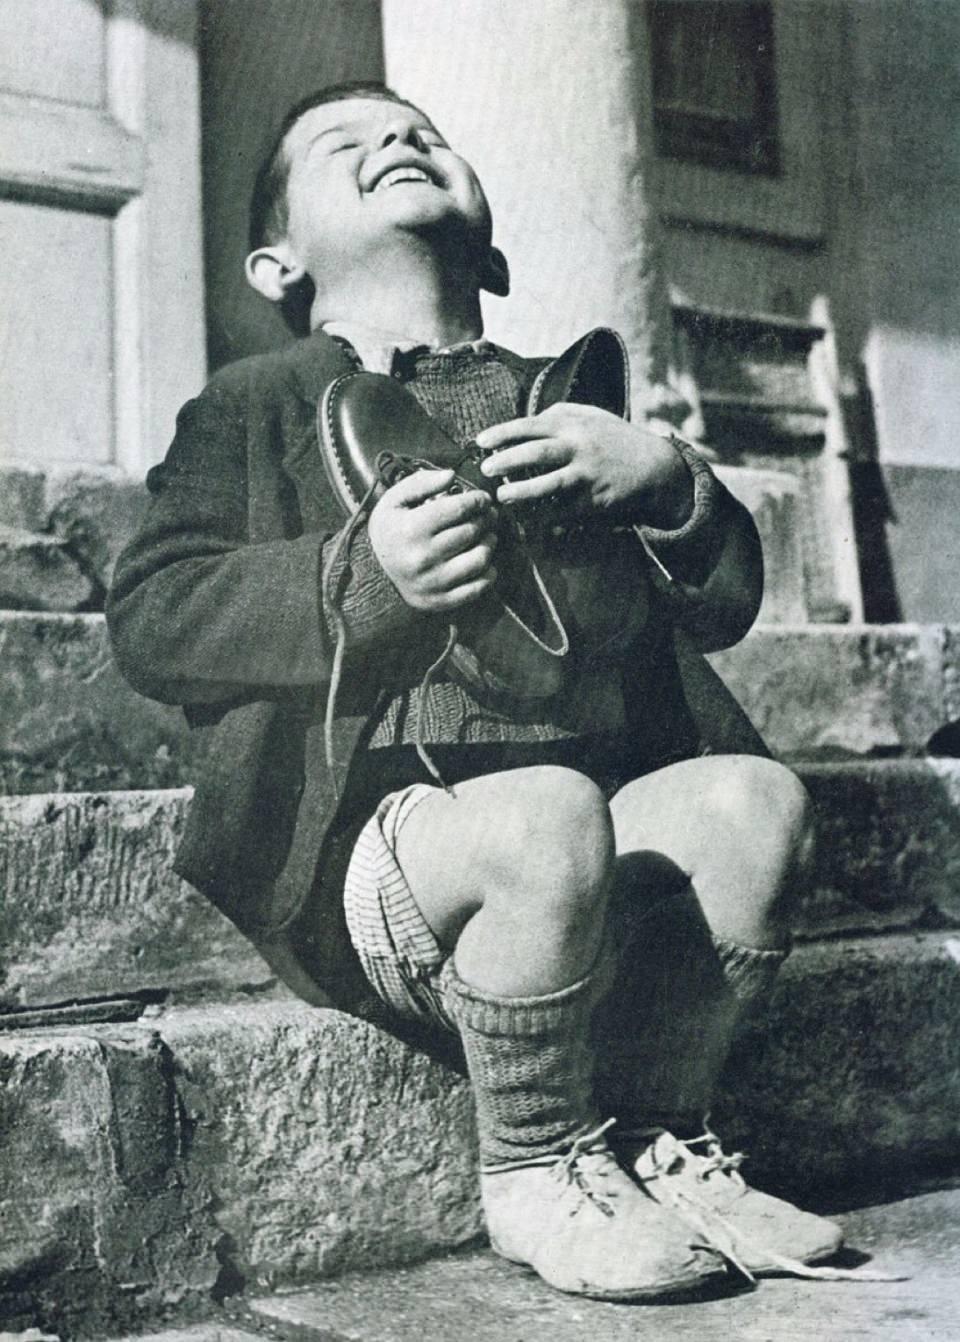 <p> 2. Dünya Savaşı zamanlarında Avusturyalı küçük bir çocuğun yeni ayakkabılarına kavuşma anı </p>

<p> </p>
